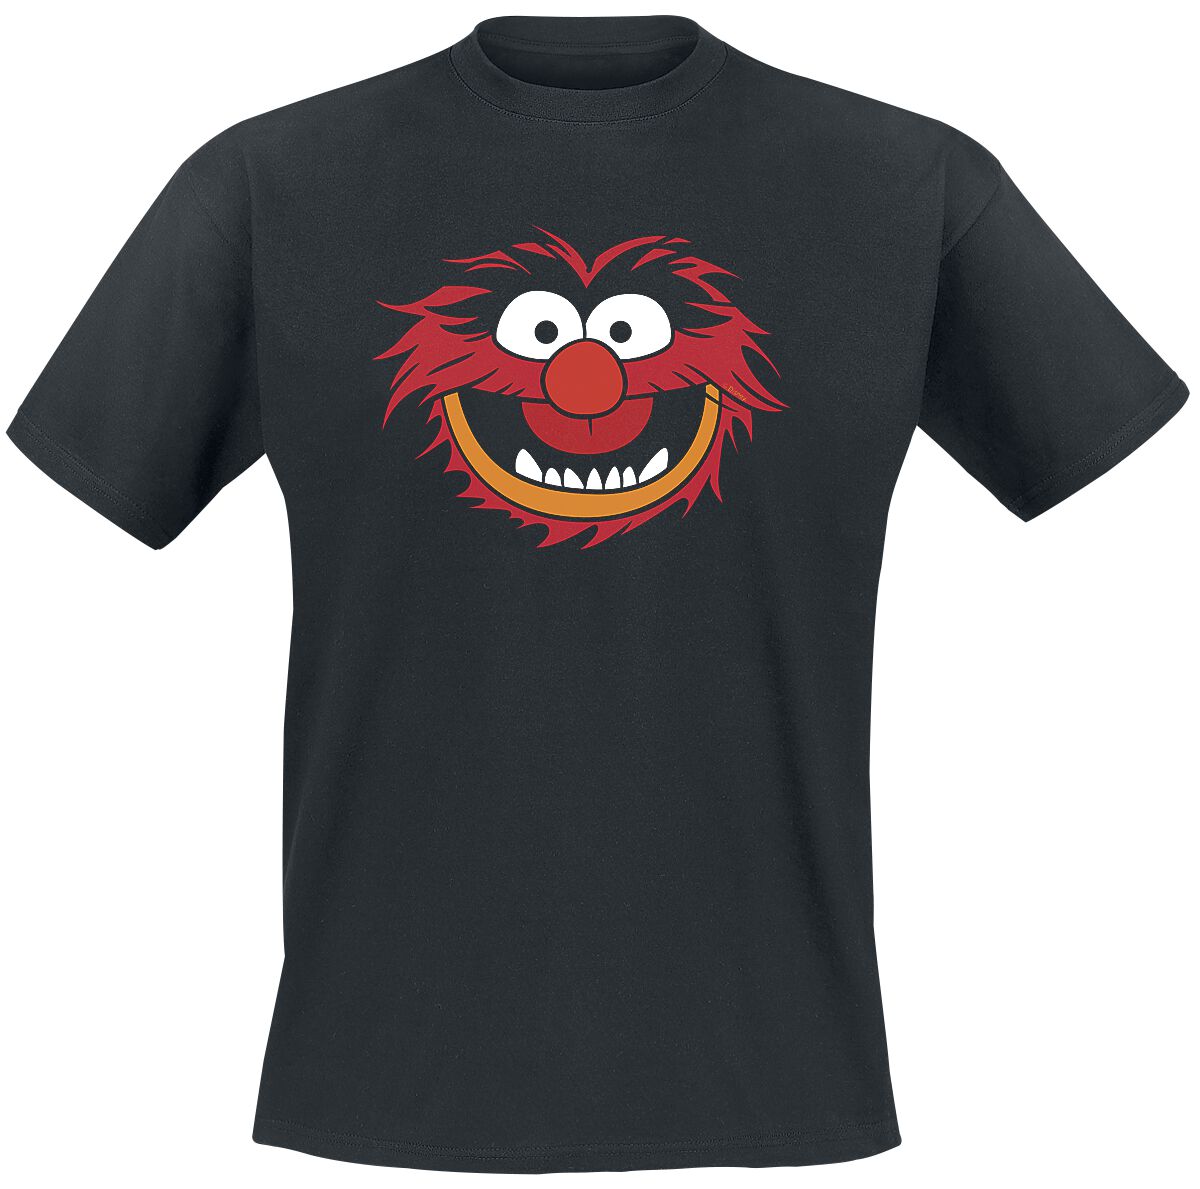 Die Muppets T-Shirt - Animal - Gesicht - S bis XXL - für Männer - Größe S - schwarz  - Lizenzierter Fanartikel